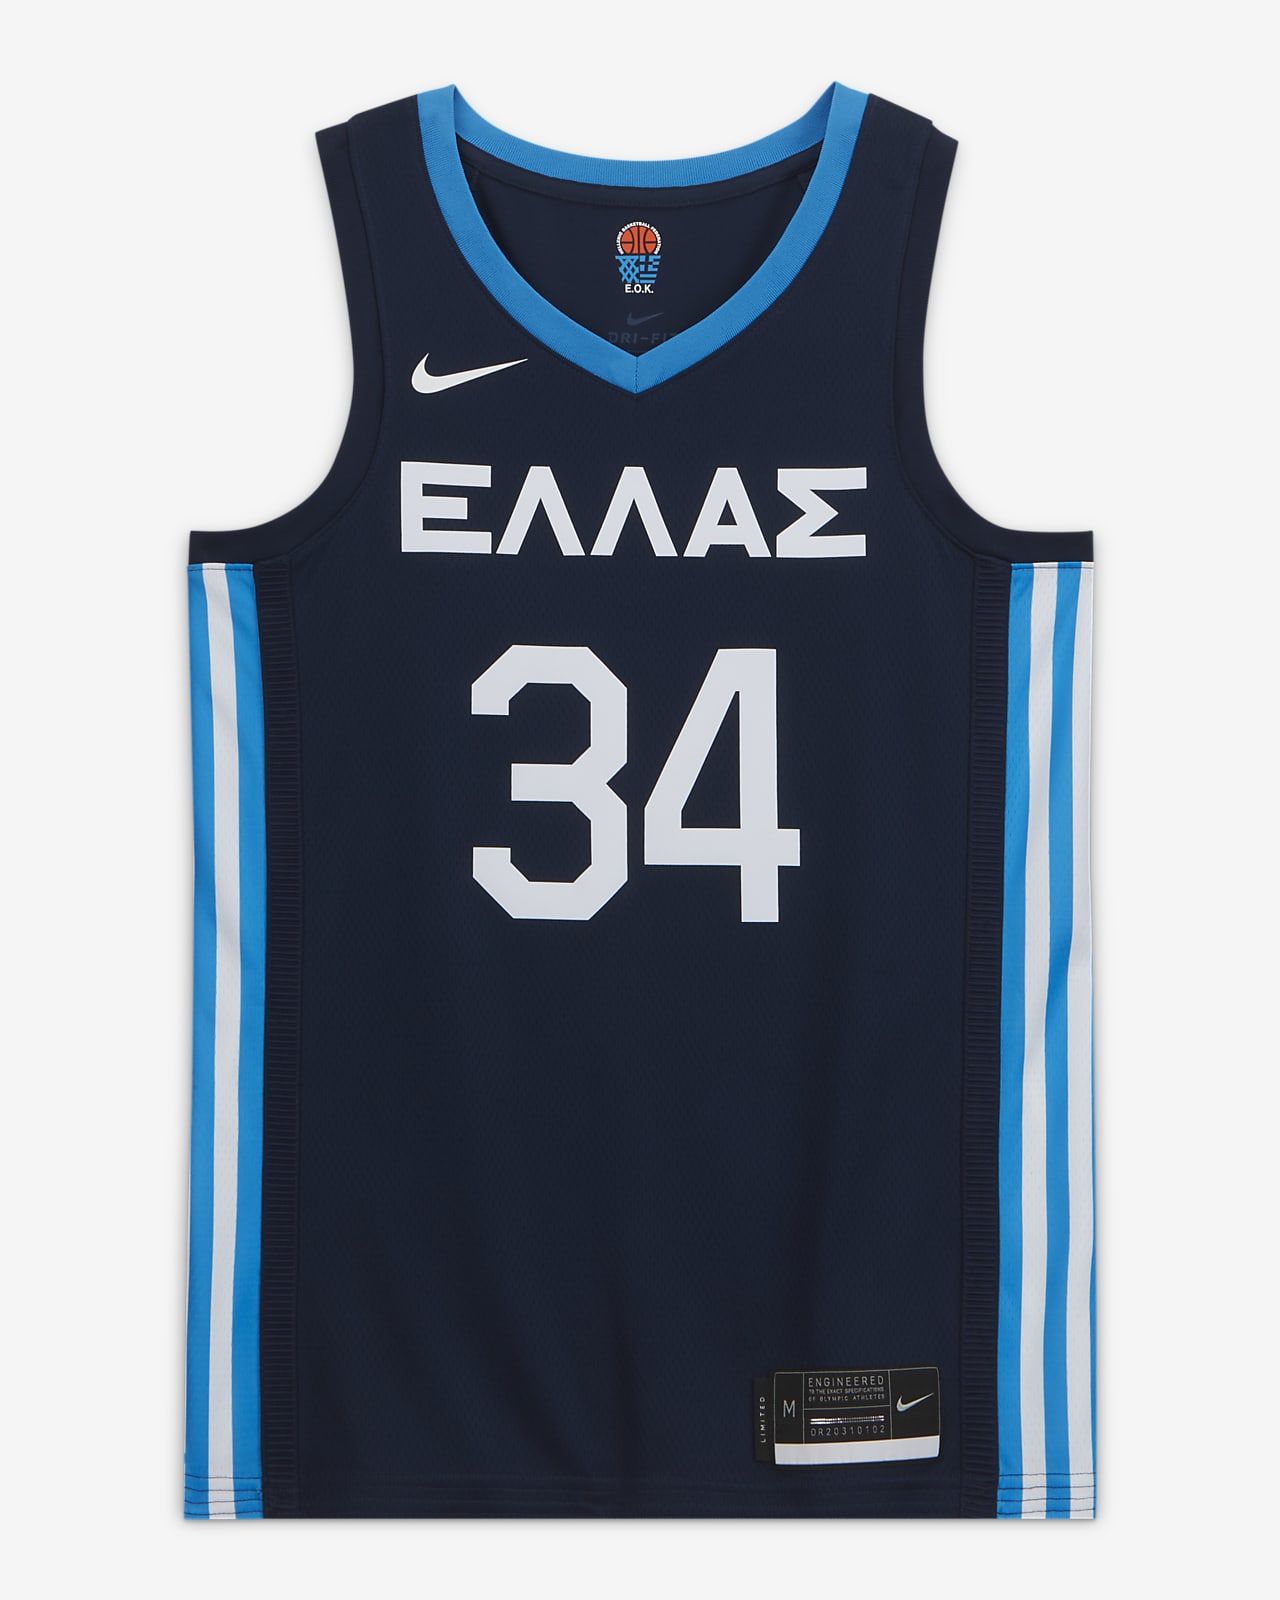 Griekenland (Road) Nike Limited Basketbaljersey voor heren